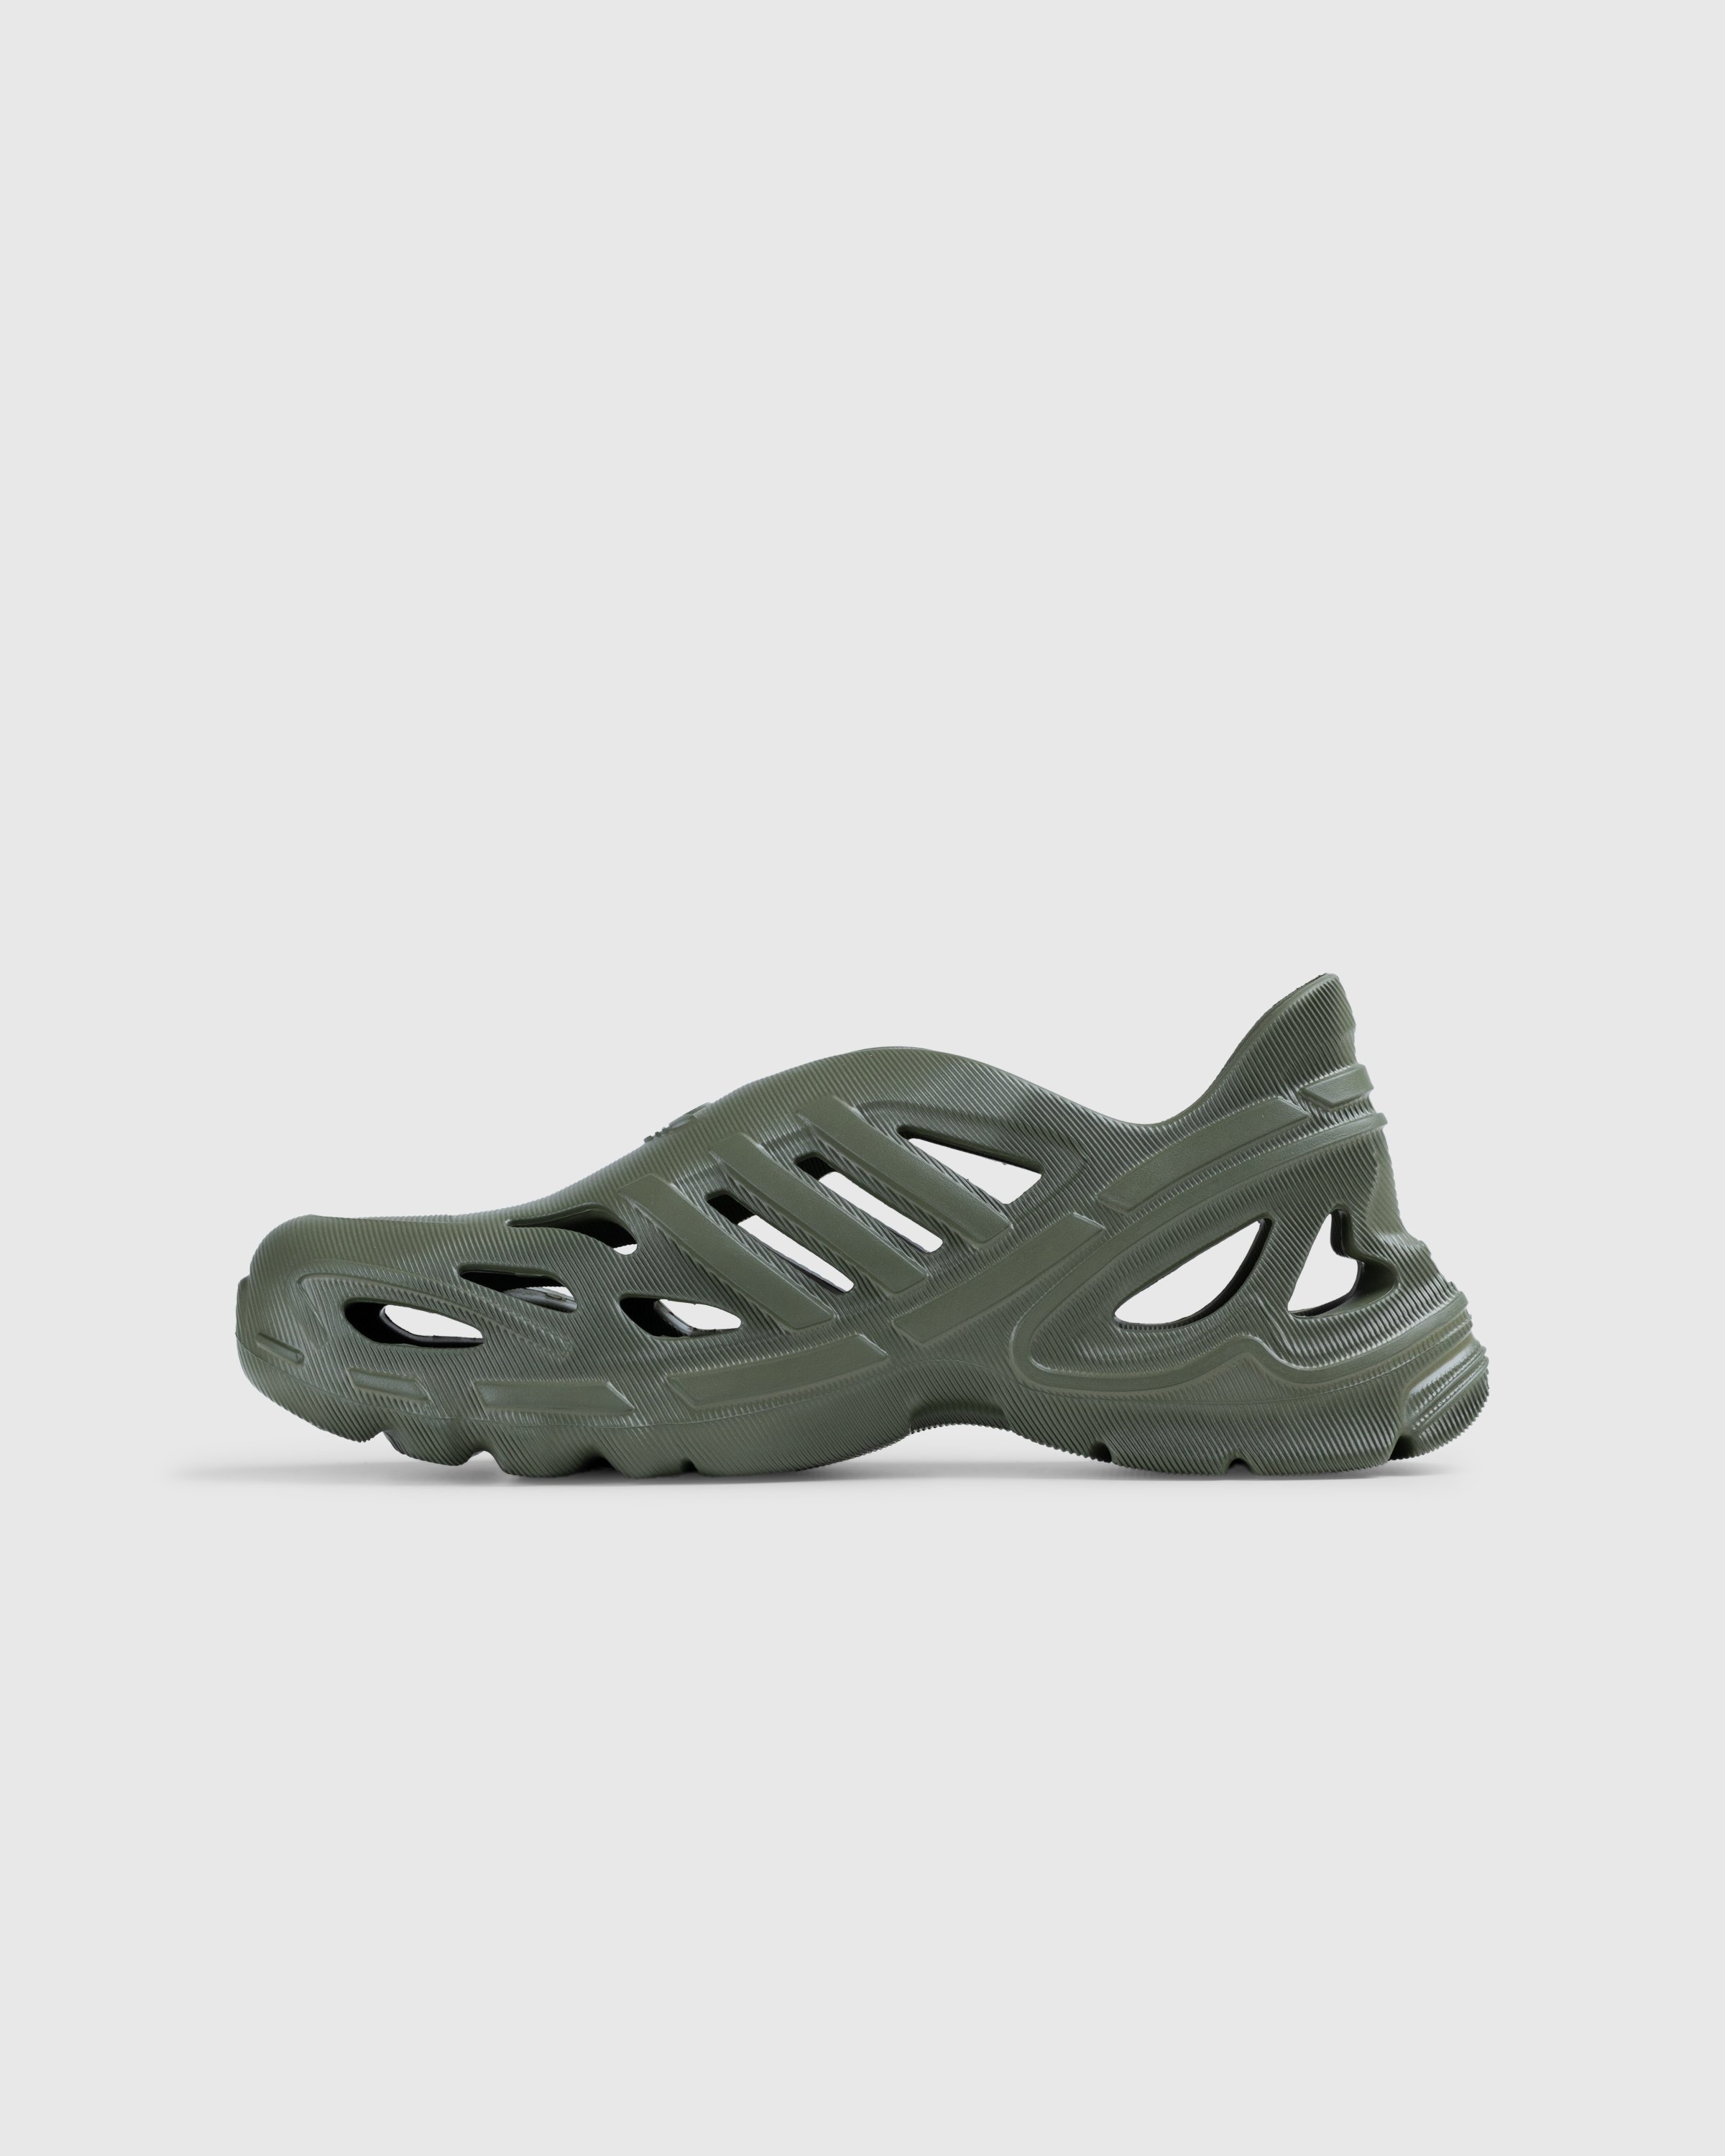 Adidas - Adifom Supernova Focus Olive - Footwear - Green - Image 2